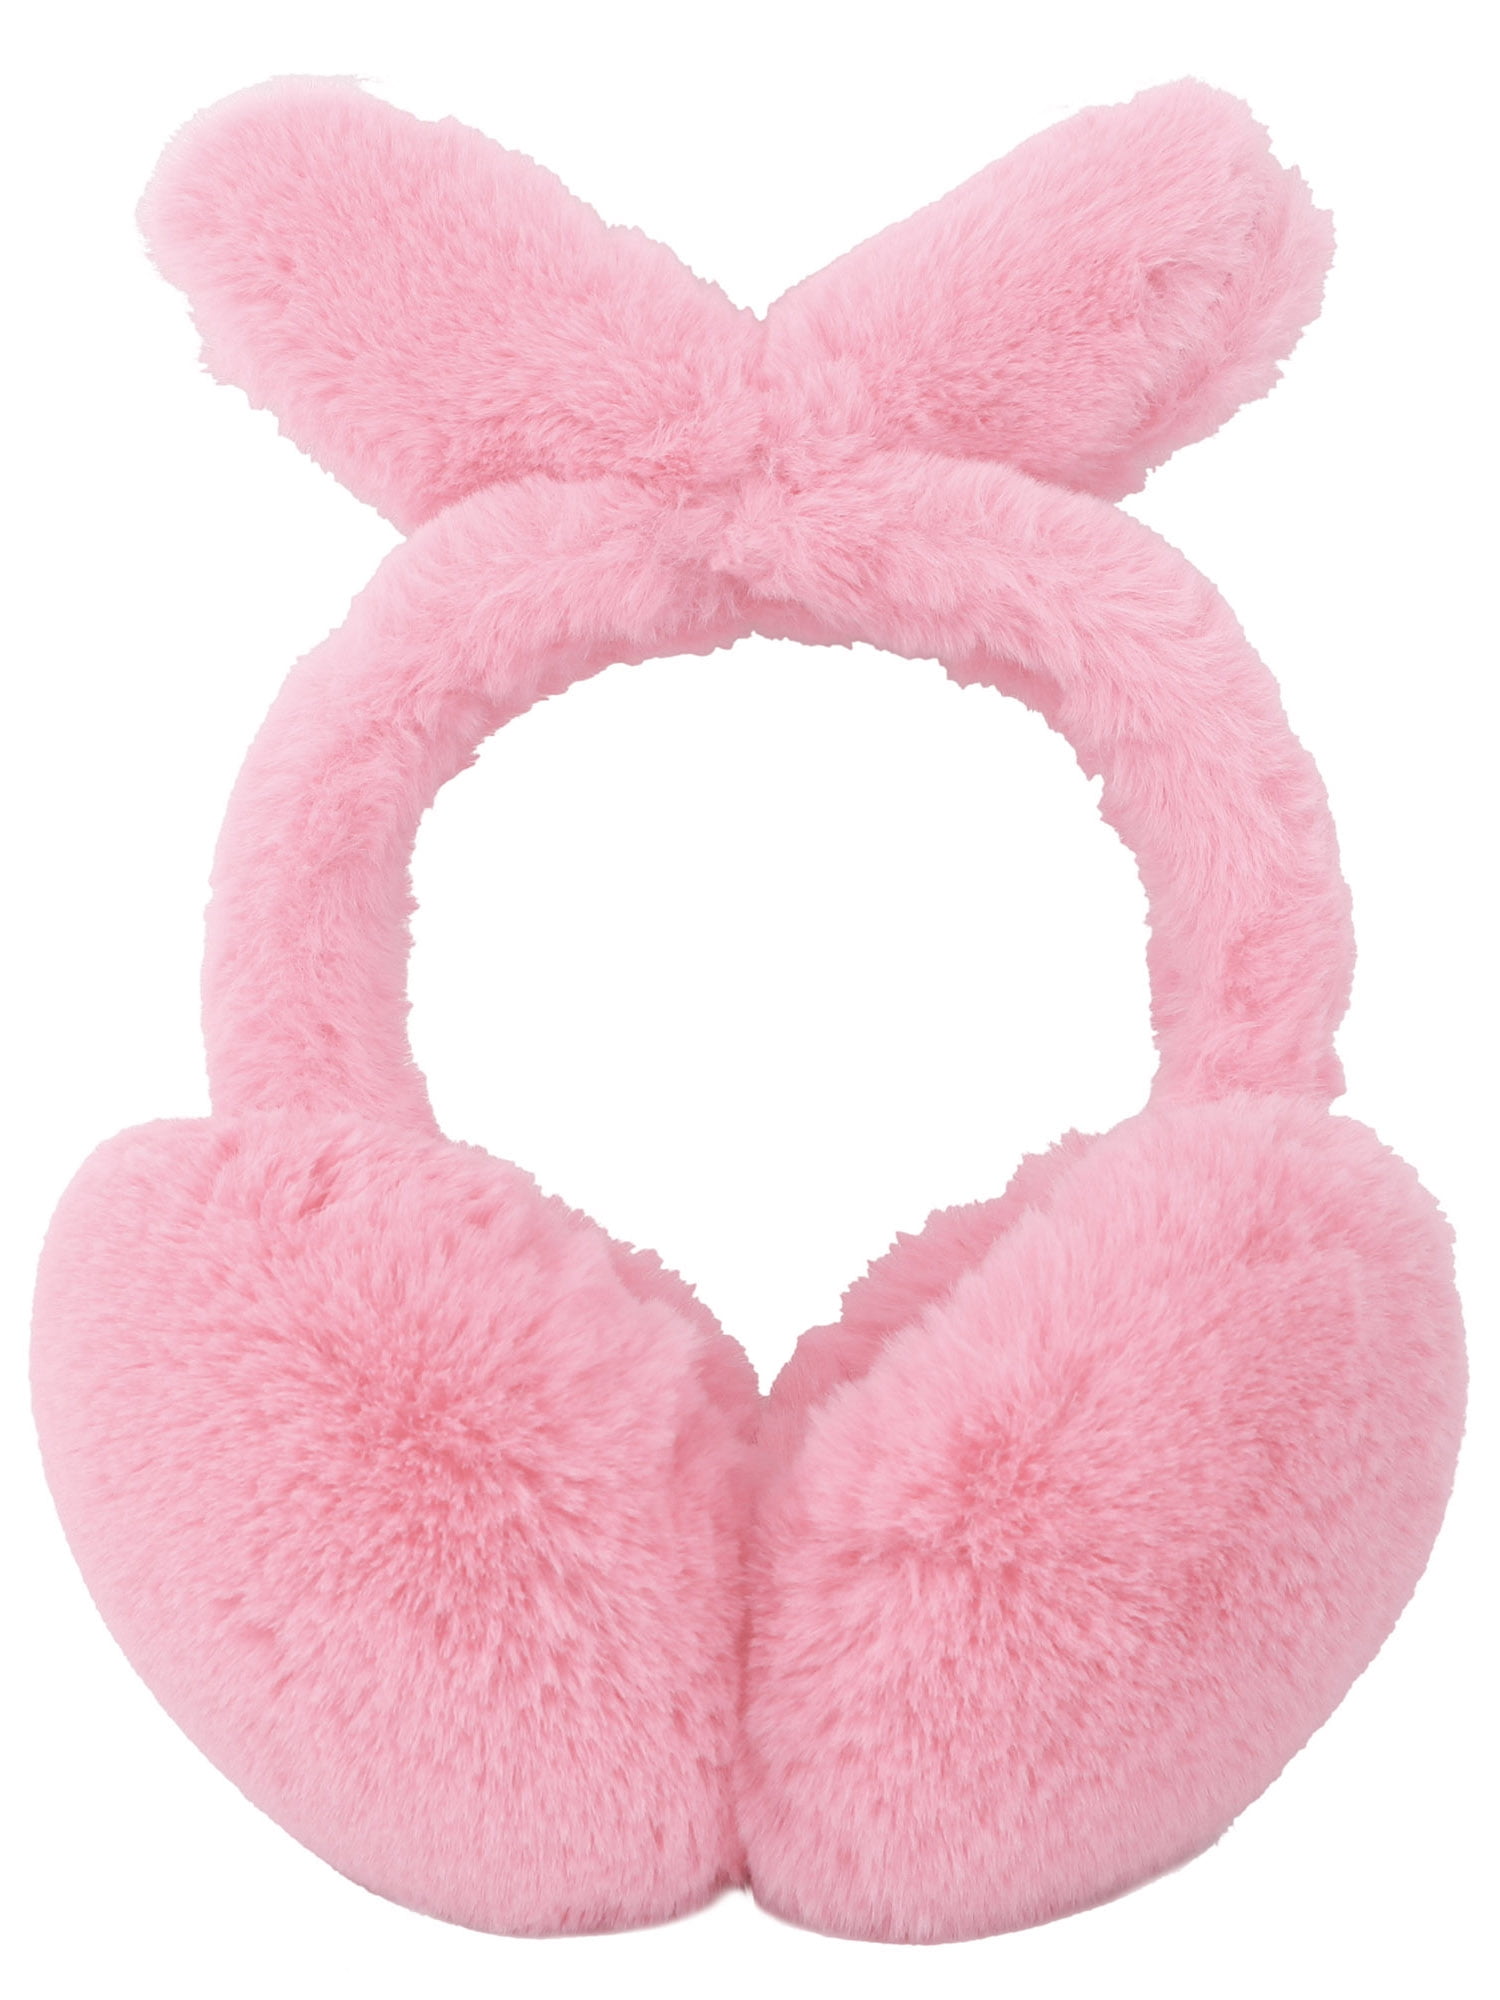 Winter Plush Earwarmer Bunny Earmuffs with Moving Jumping Rabbit Ears for Women Girls Lumumi Cute Plush Earmuffs 